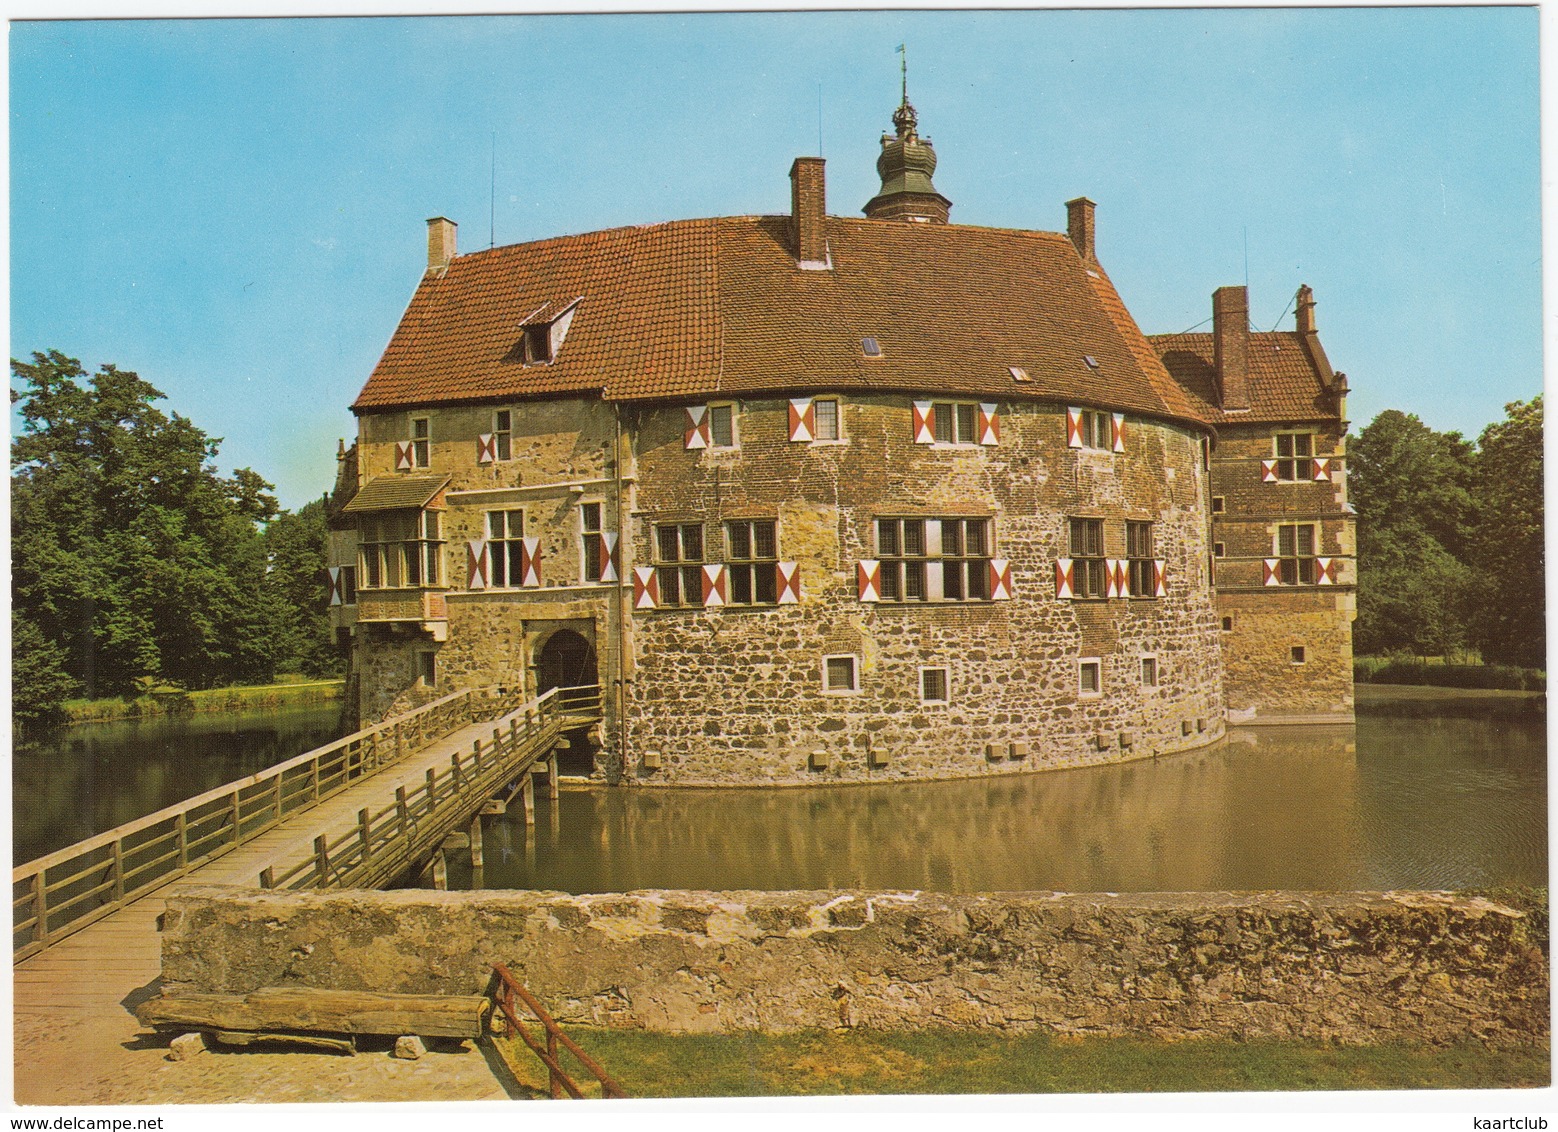 Lüdinghausen (Westfalen) - Burg Vischering - (D.) - 2 - Lüdinghausen